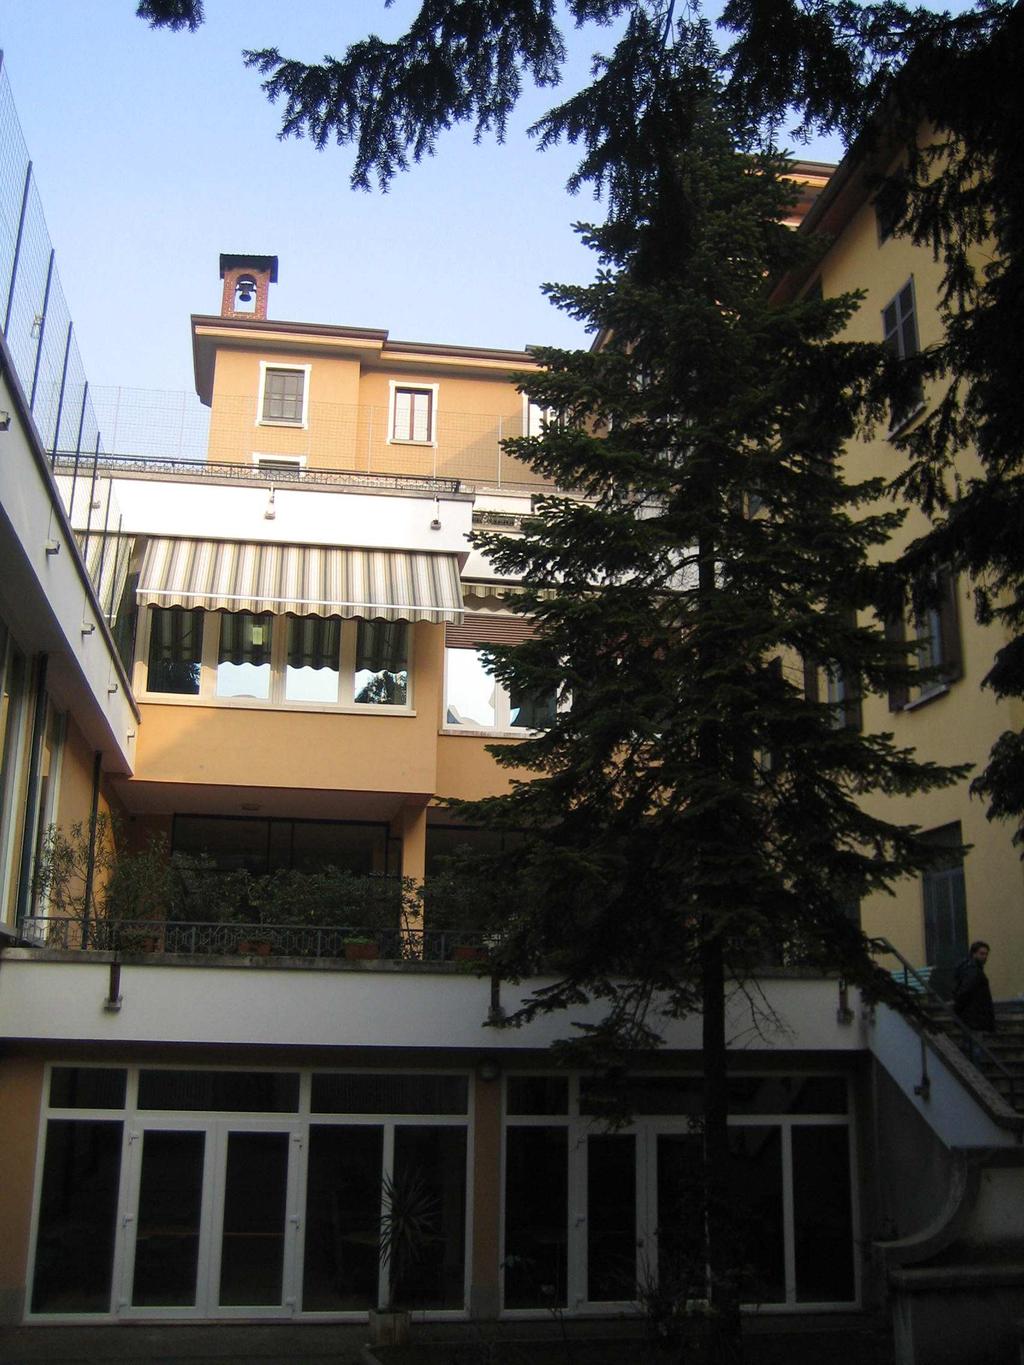 501b 501b DENOMINAZIONE: Istituto Matilde di Canossa INDIRIZZO: Via BALESTRA 12, 10 Post 1935 (1935-1969) 3 parte di 2 piani;